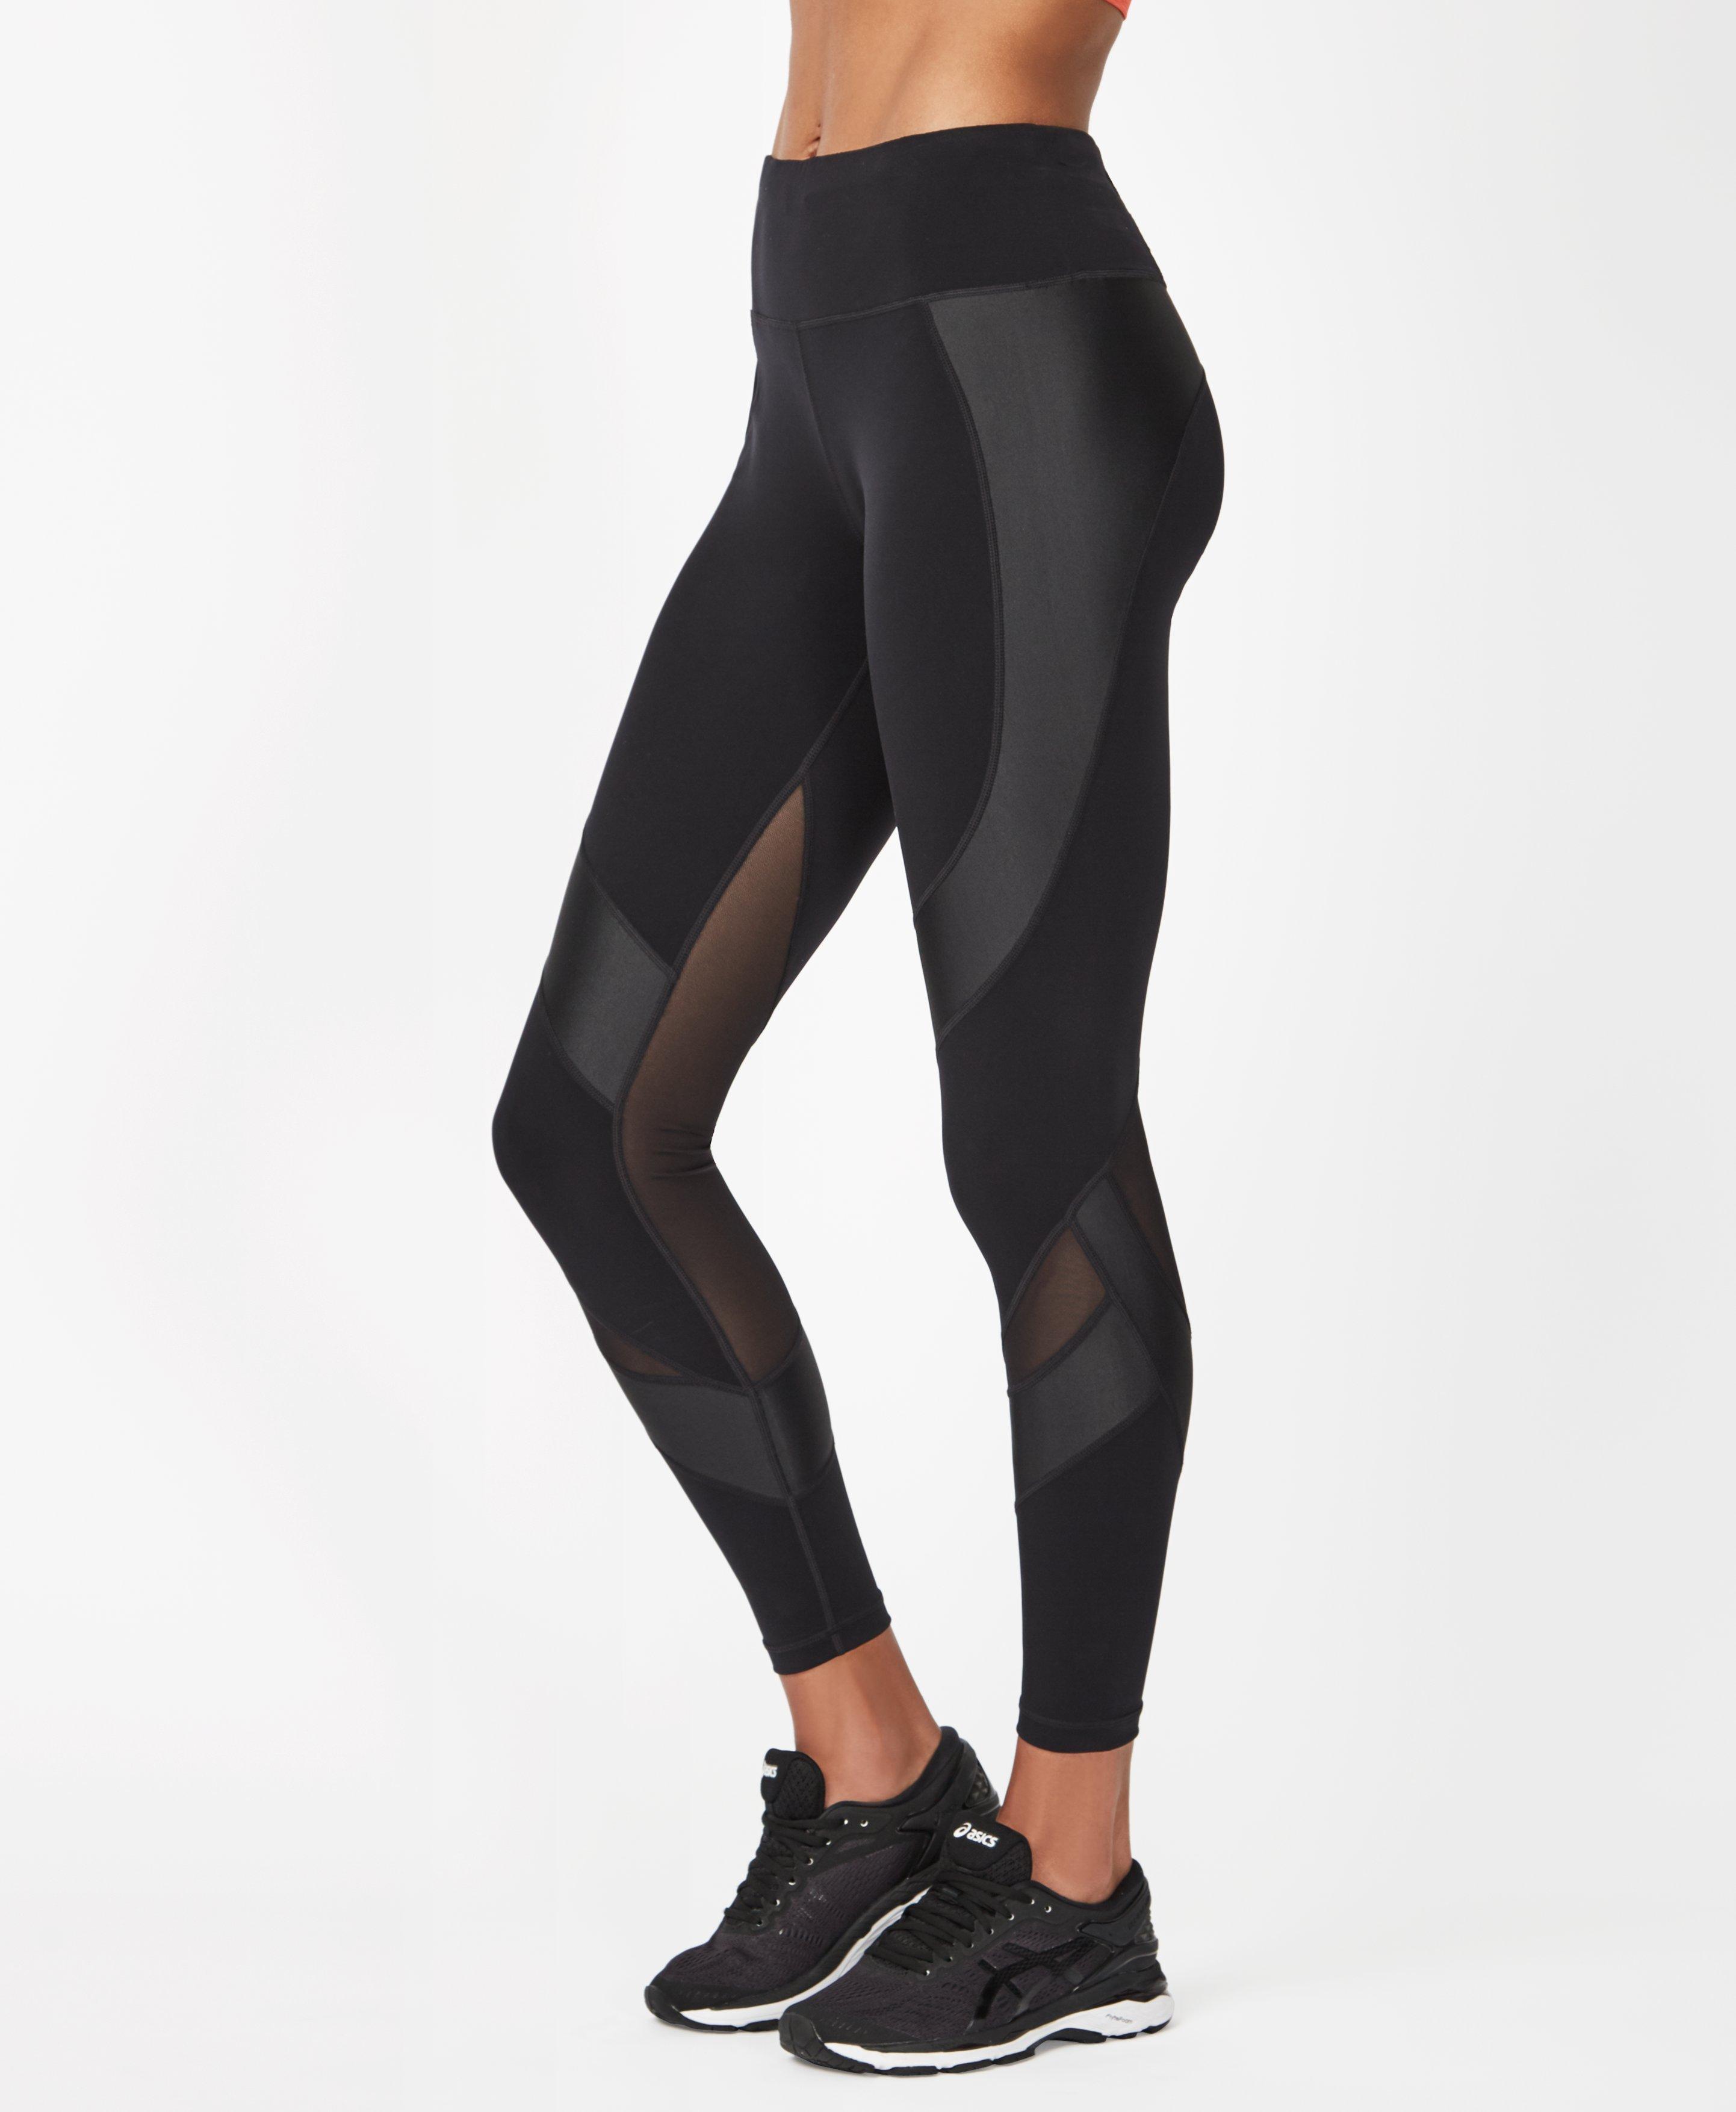 black mesh workout leggings